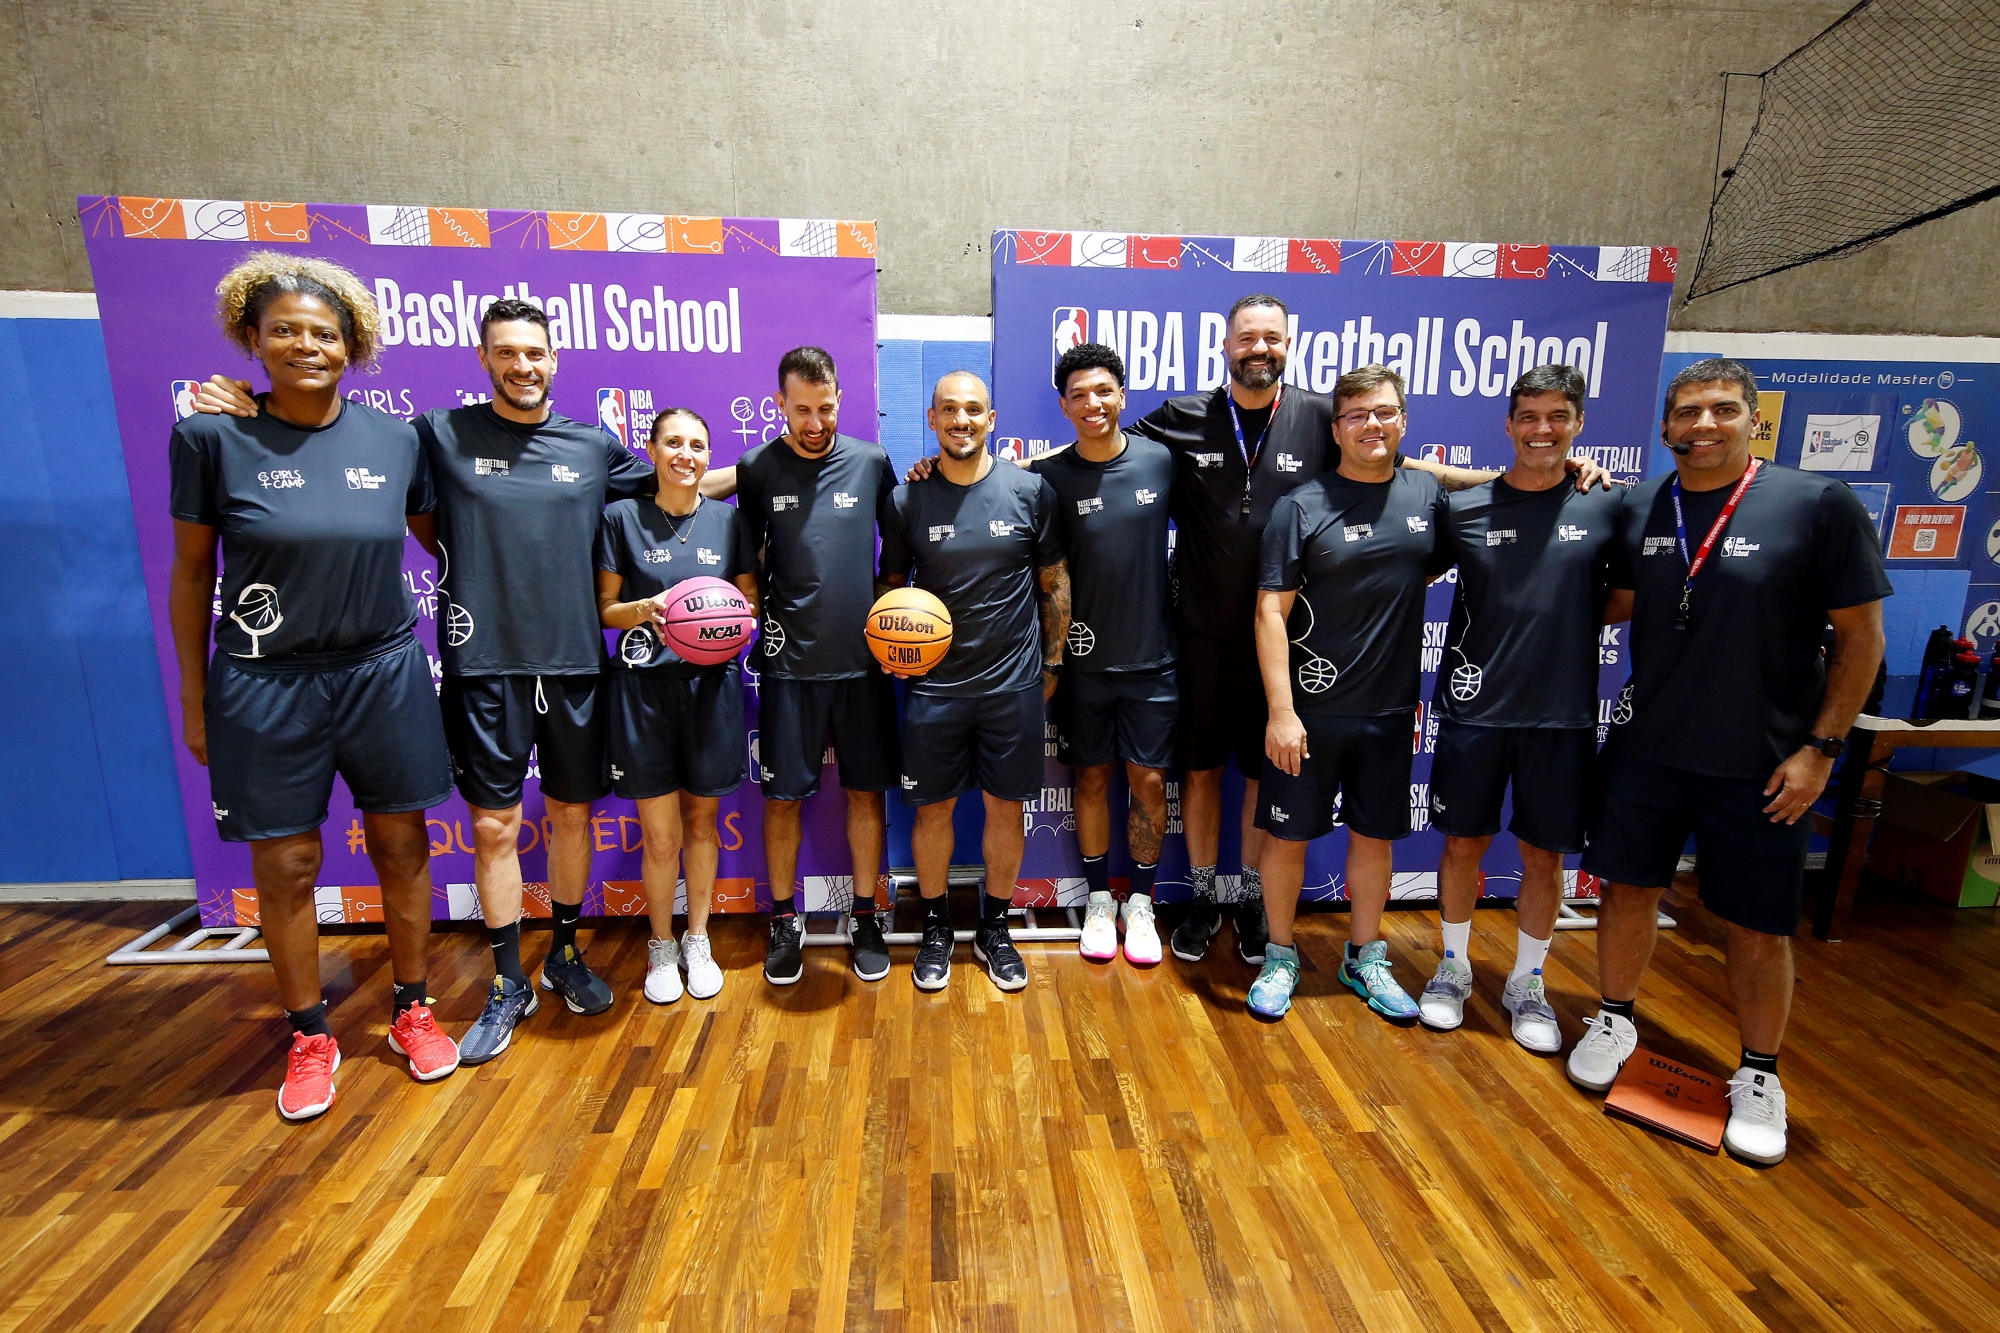 'Seleção' de técnicos é destaque nos camps do NBA Basketball School em São Paulo